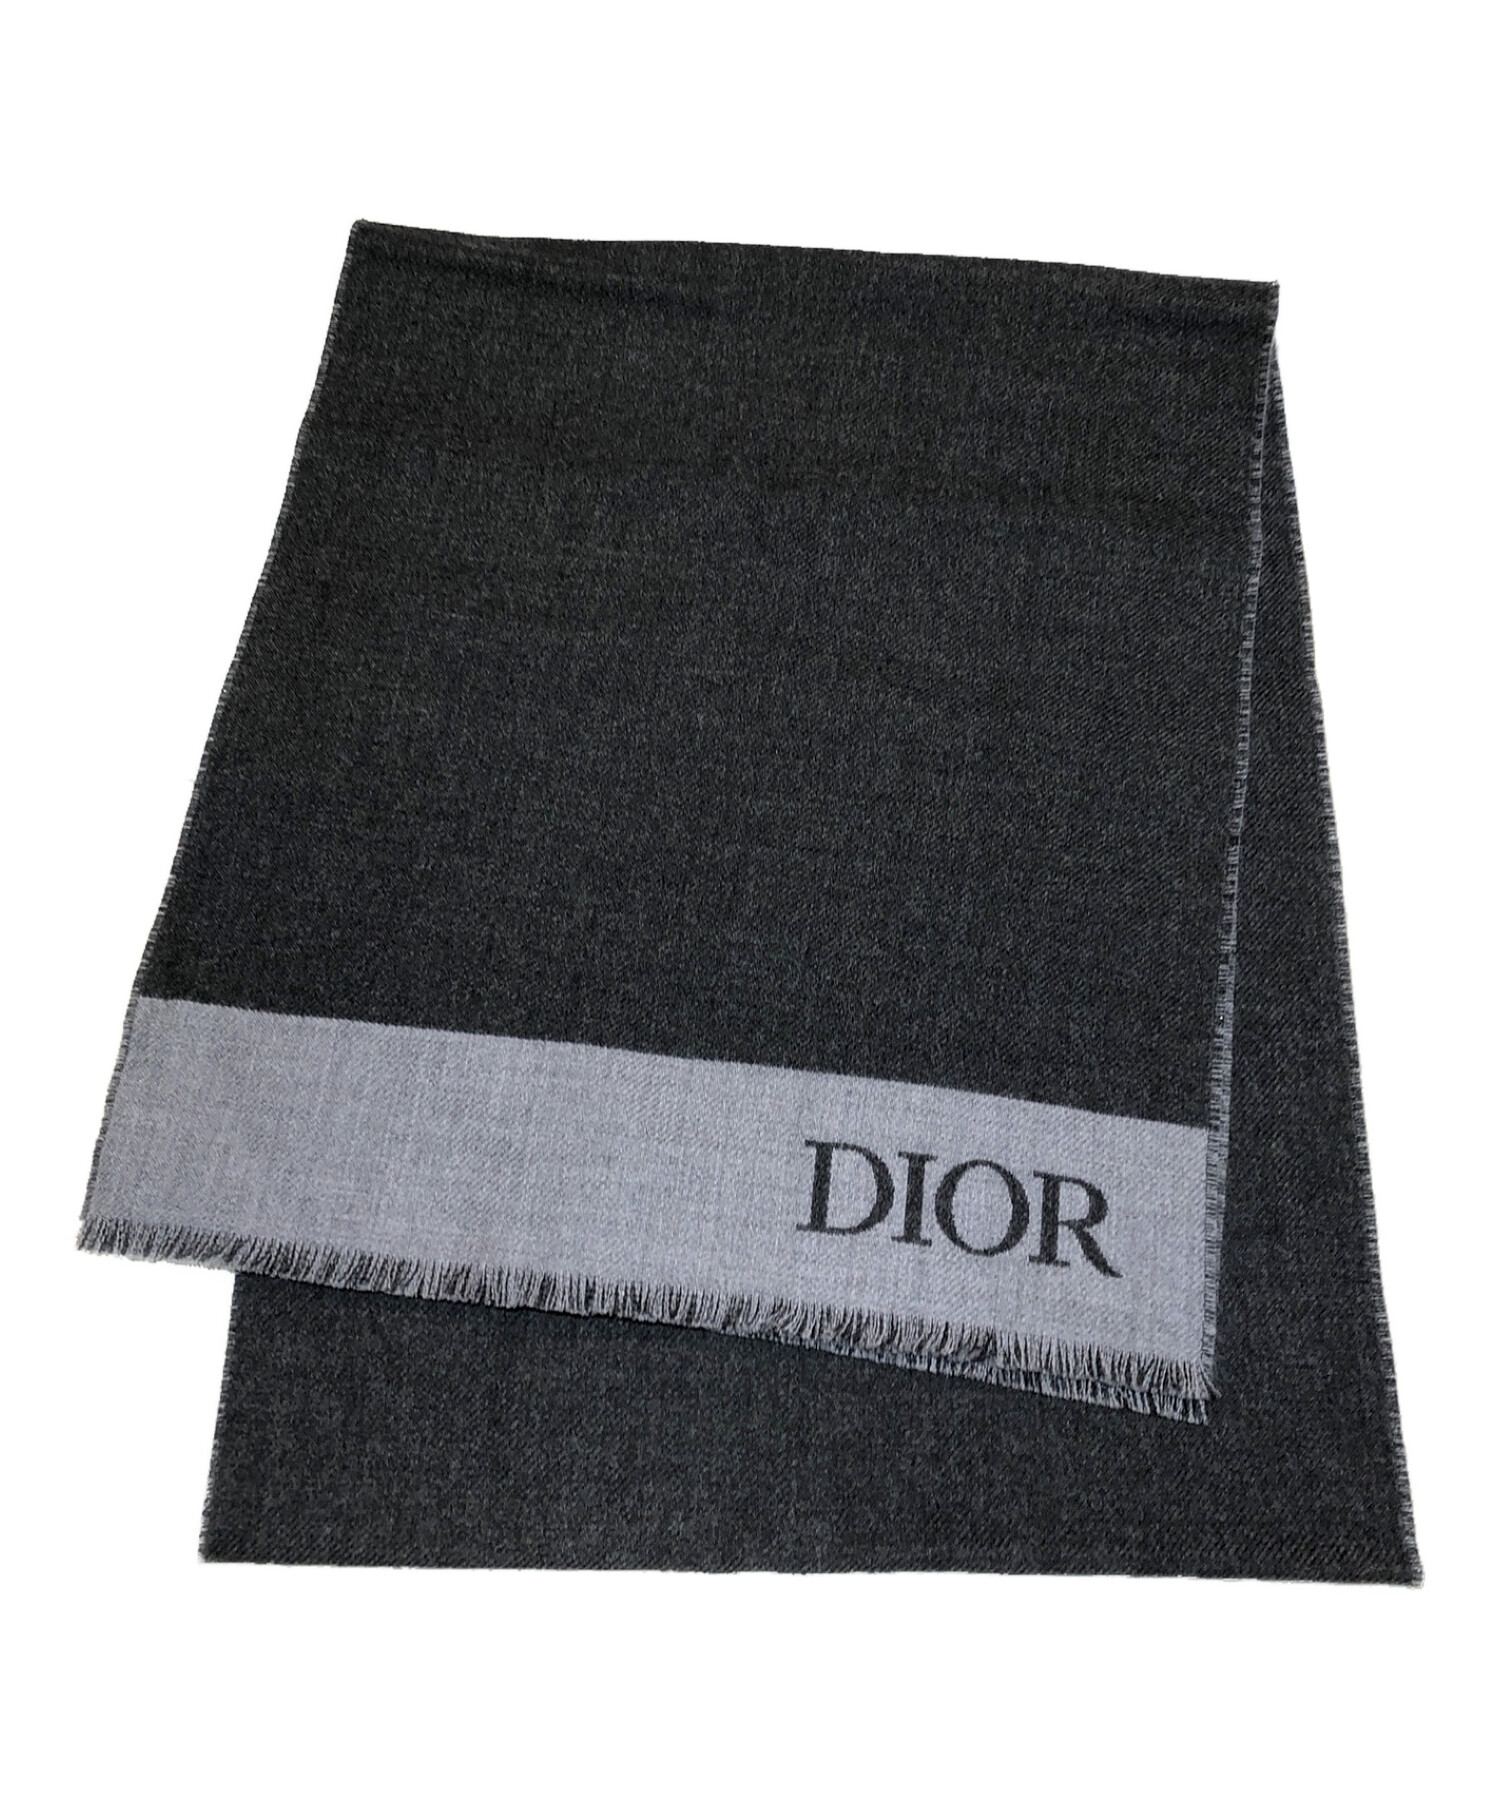 Christian Dior (クリスチャン ディオール) DIOR ロゴマフラー グレー 未使用品